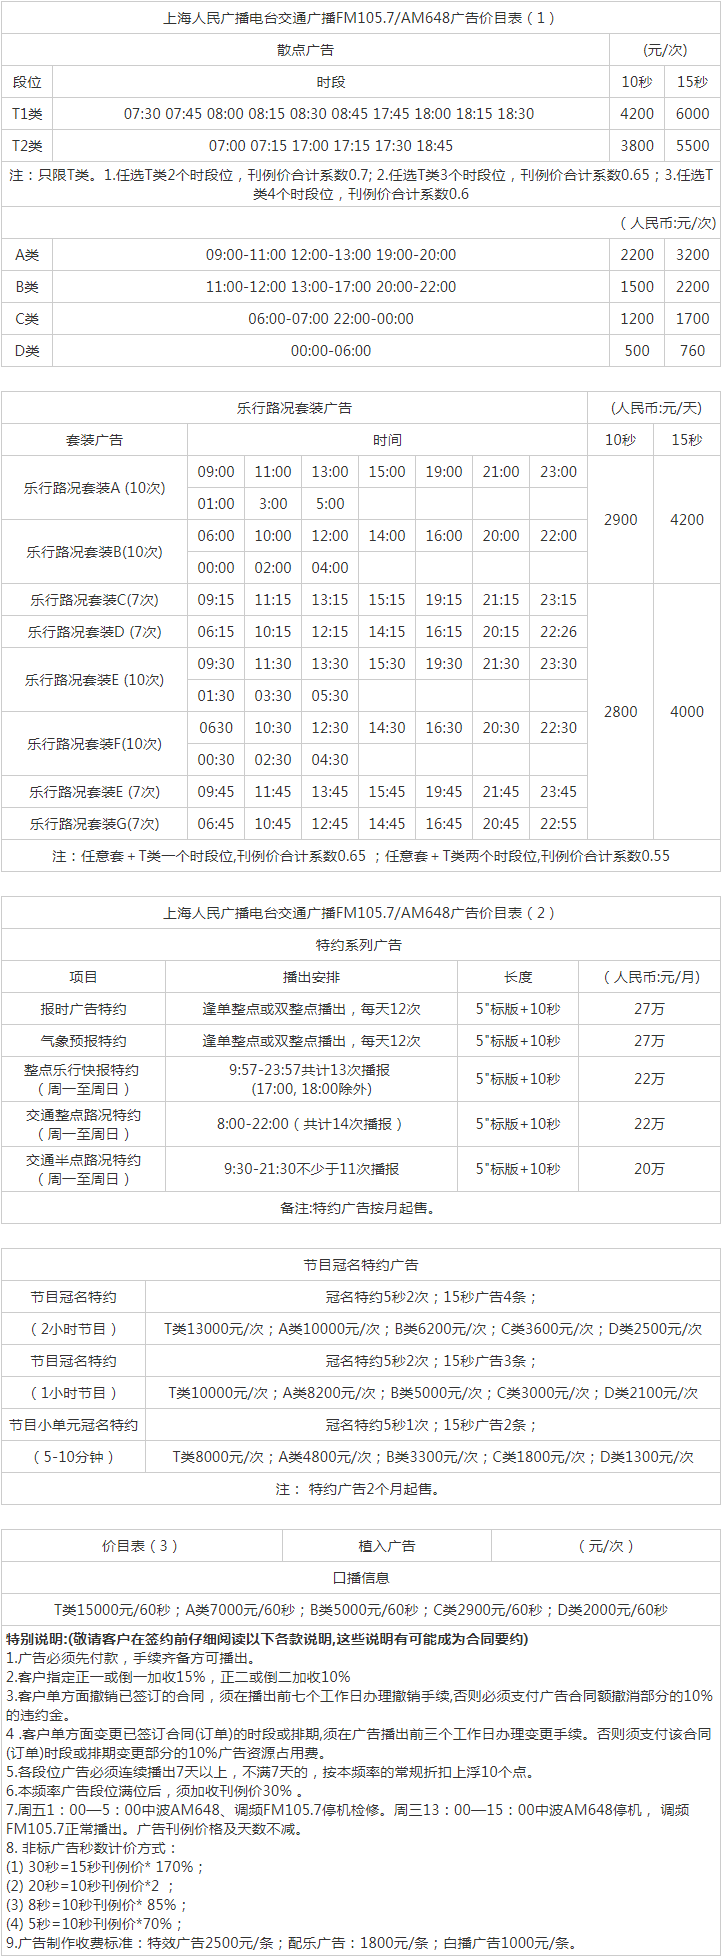 2013上海人民广播电台交通广播FM105.7广告报价表.png